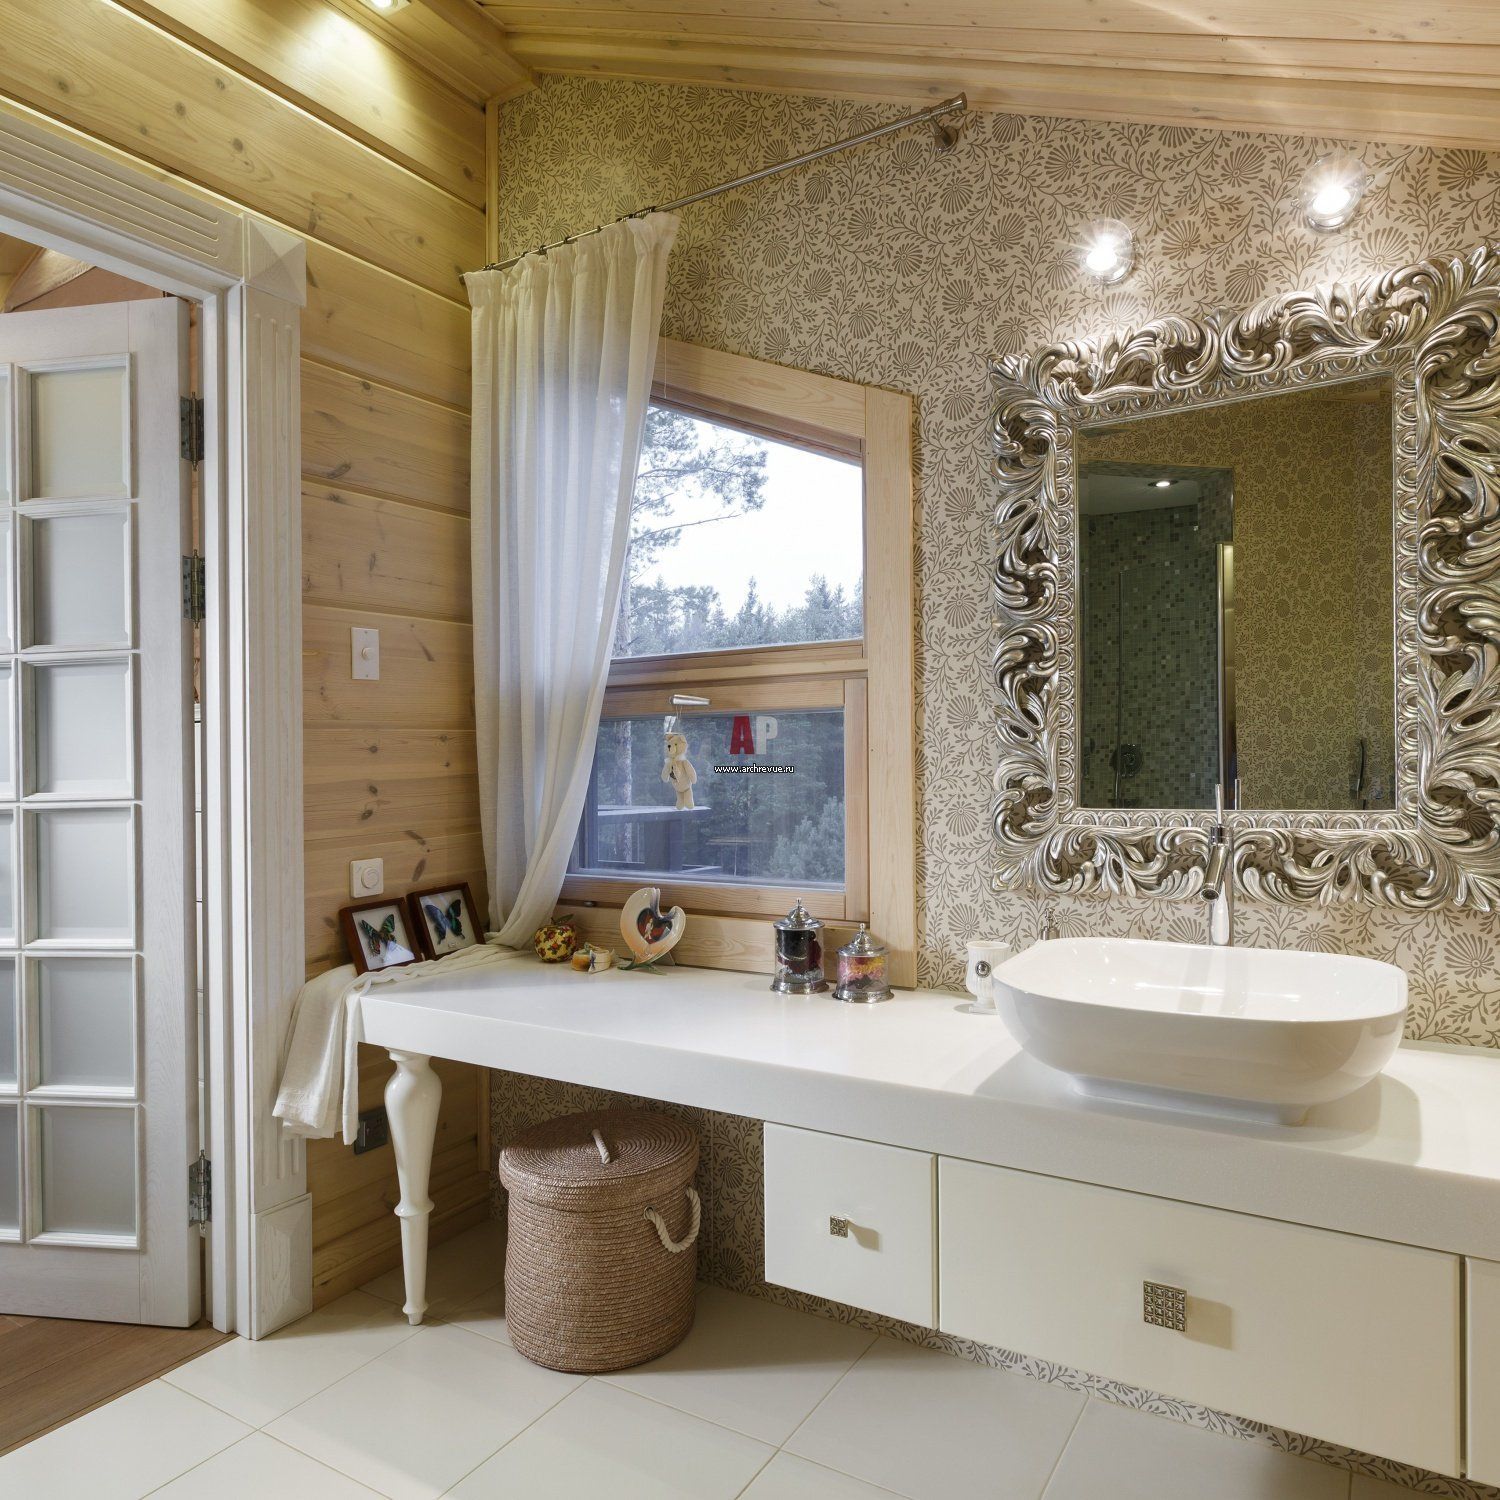 Ванная комната в частном доме. Дизайн. Фишки. Фото.